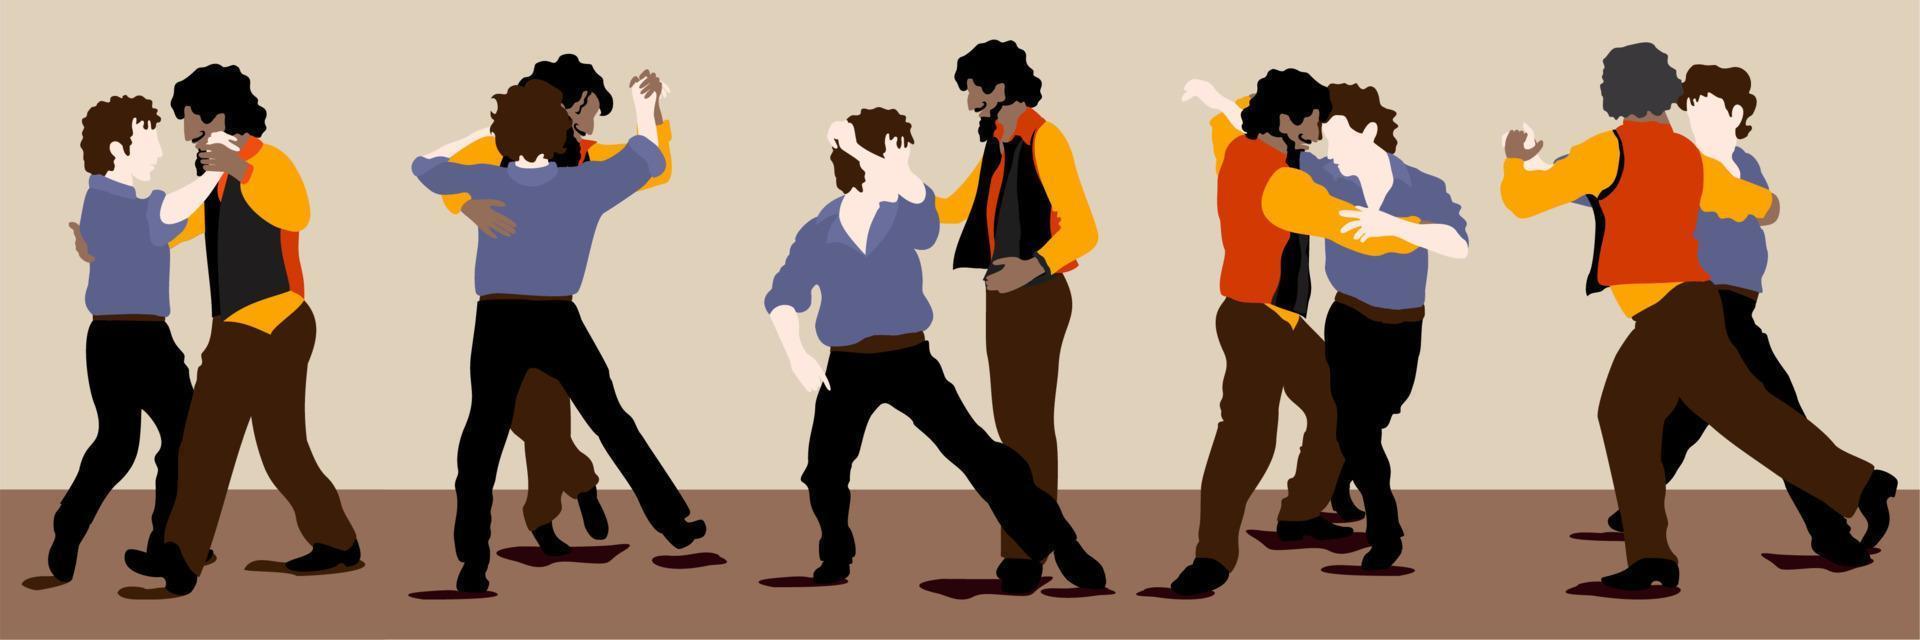 tango masculin. ensemble vectoriel de deux hommes, danseurs de tango dans différentes postures de danse. illustration expressive lumineuse.